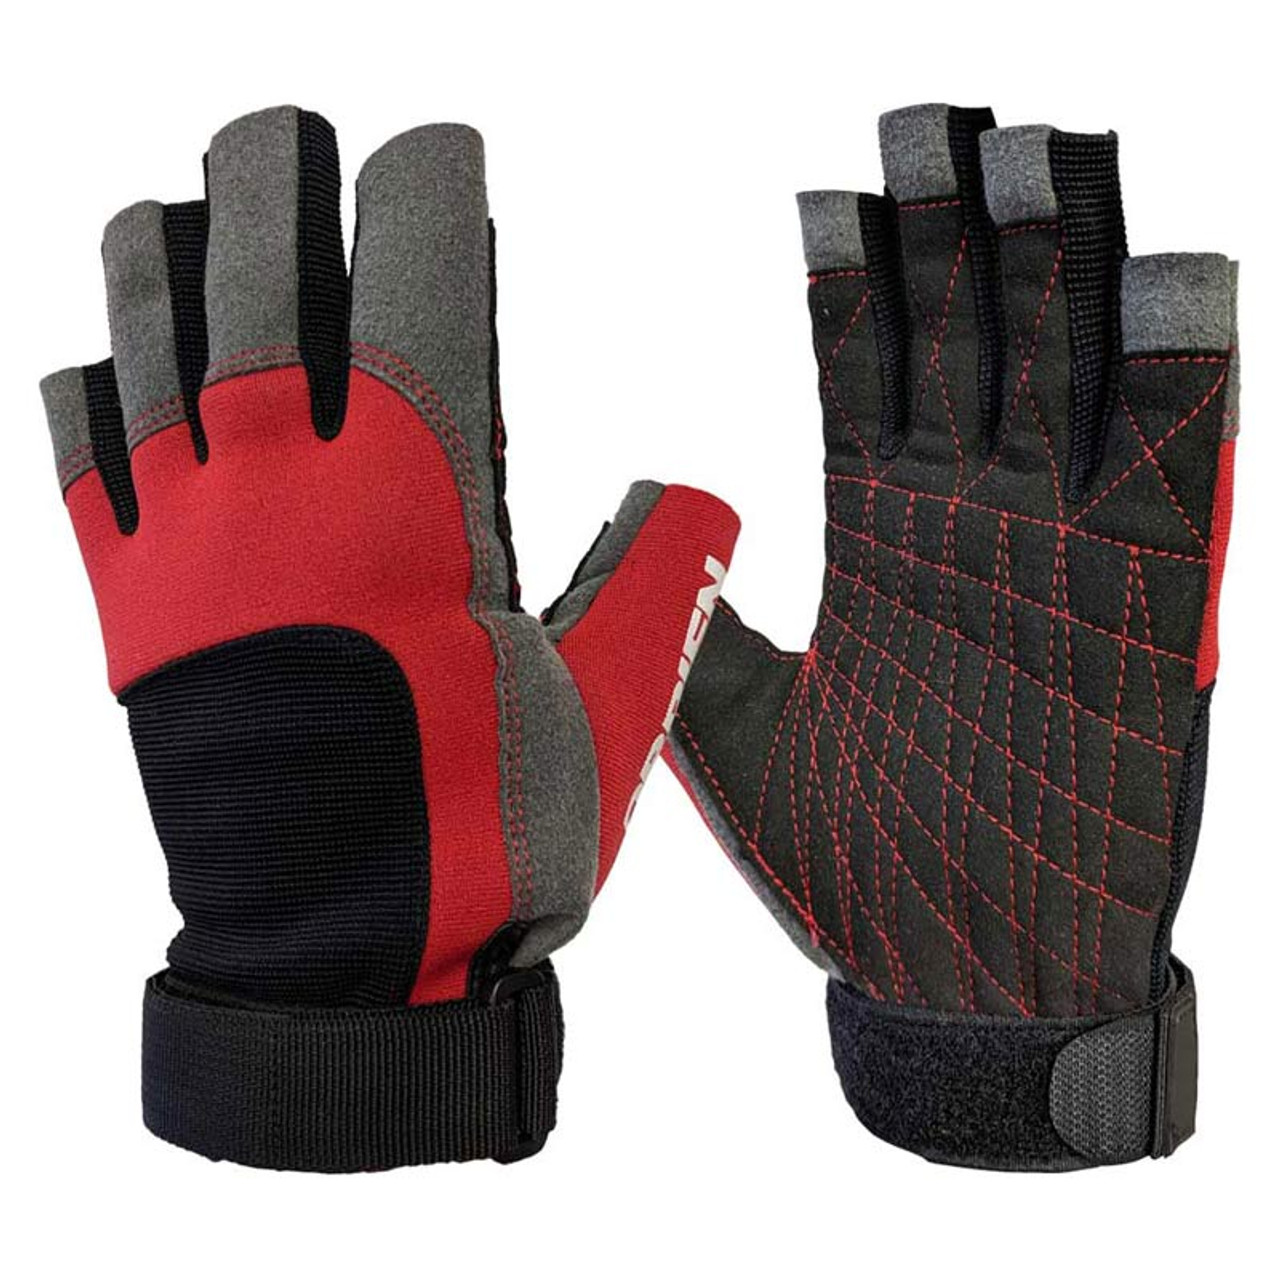 4 finger gloves